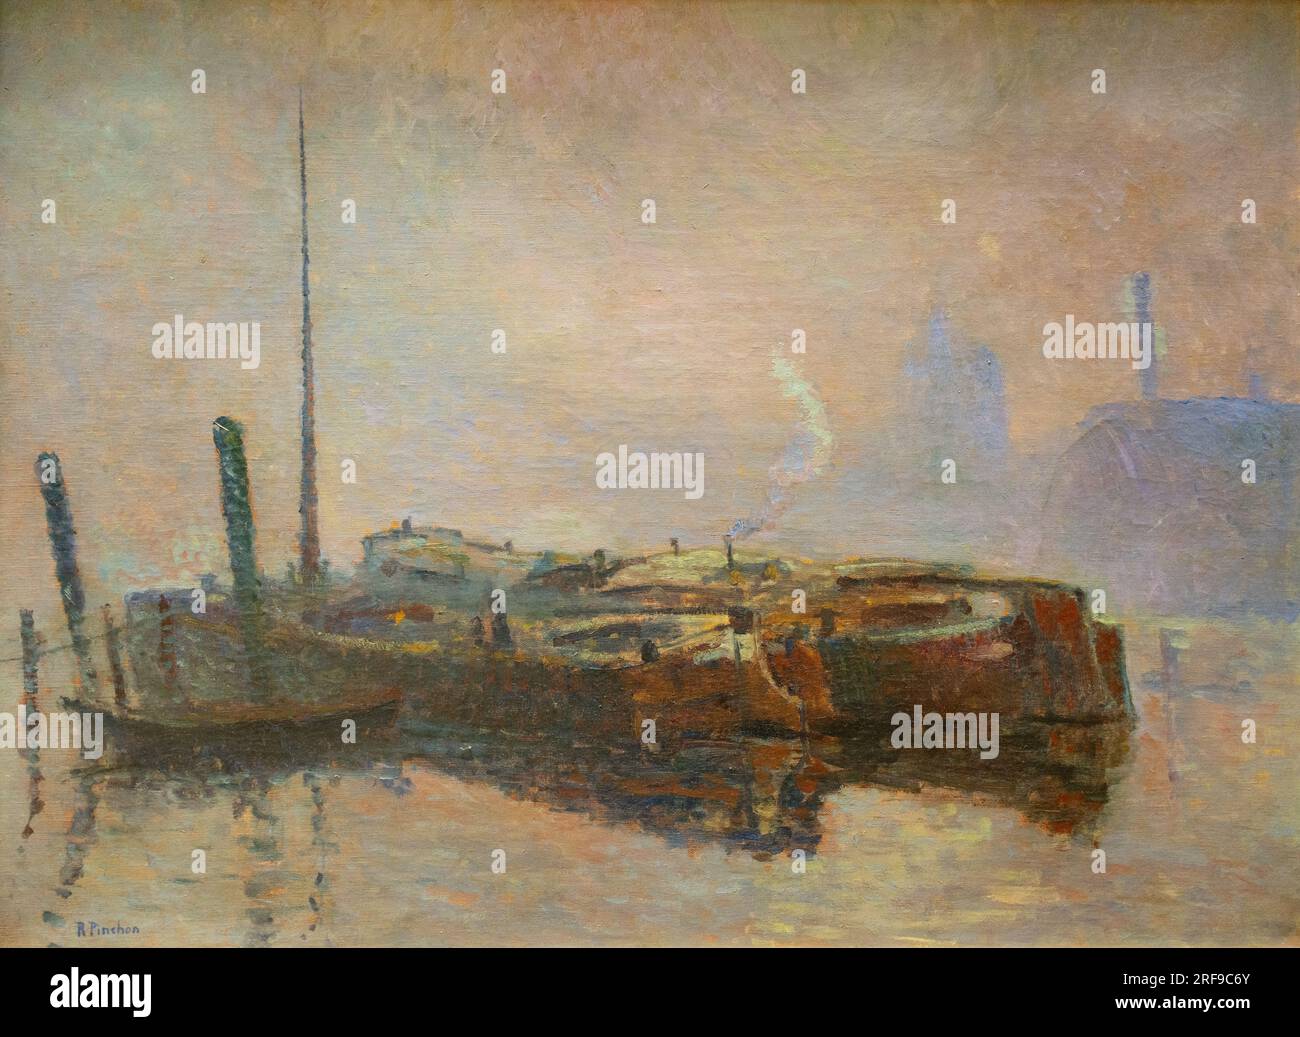 Robert Antoine Pinchon Gemälde; Barges in the Mist, unbekanntes Datum; französischer postimpressionistischer Landschaftsmaler 1886-1943 Stockfoto